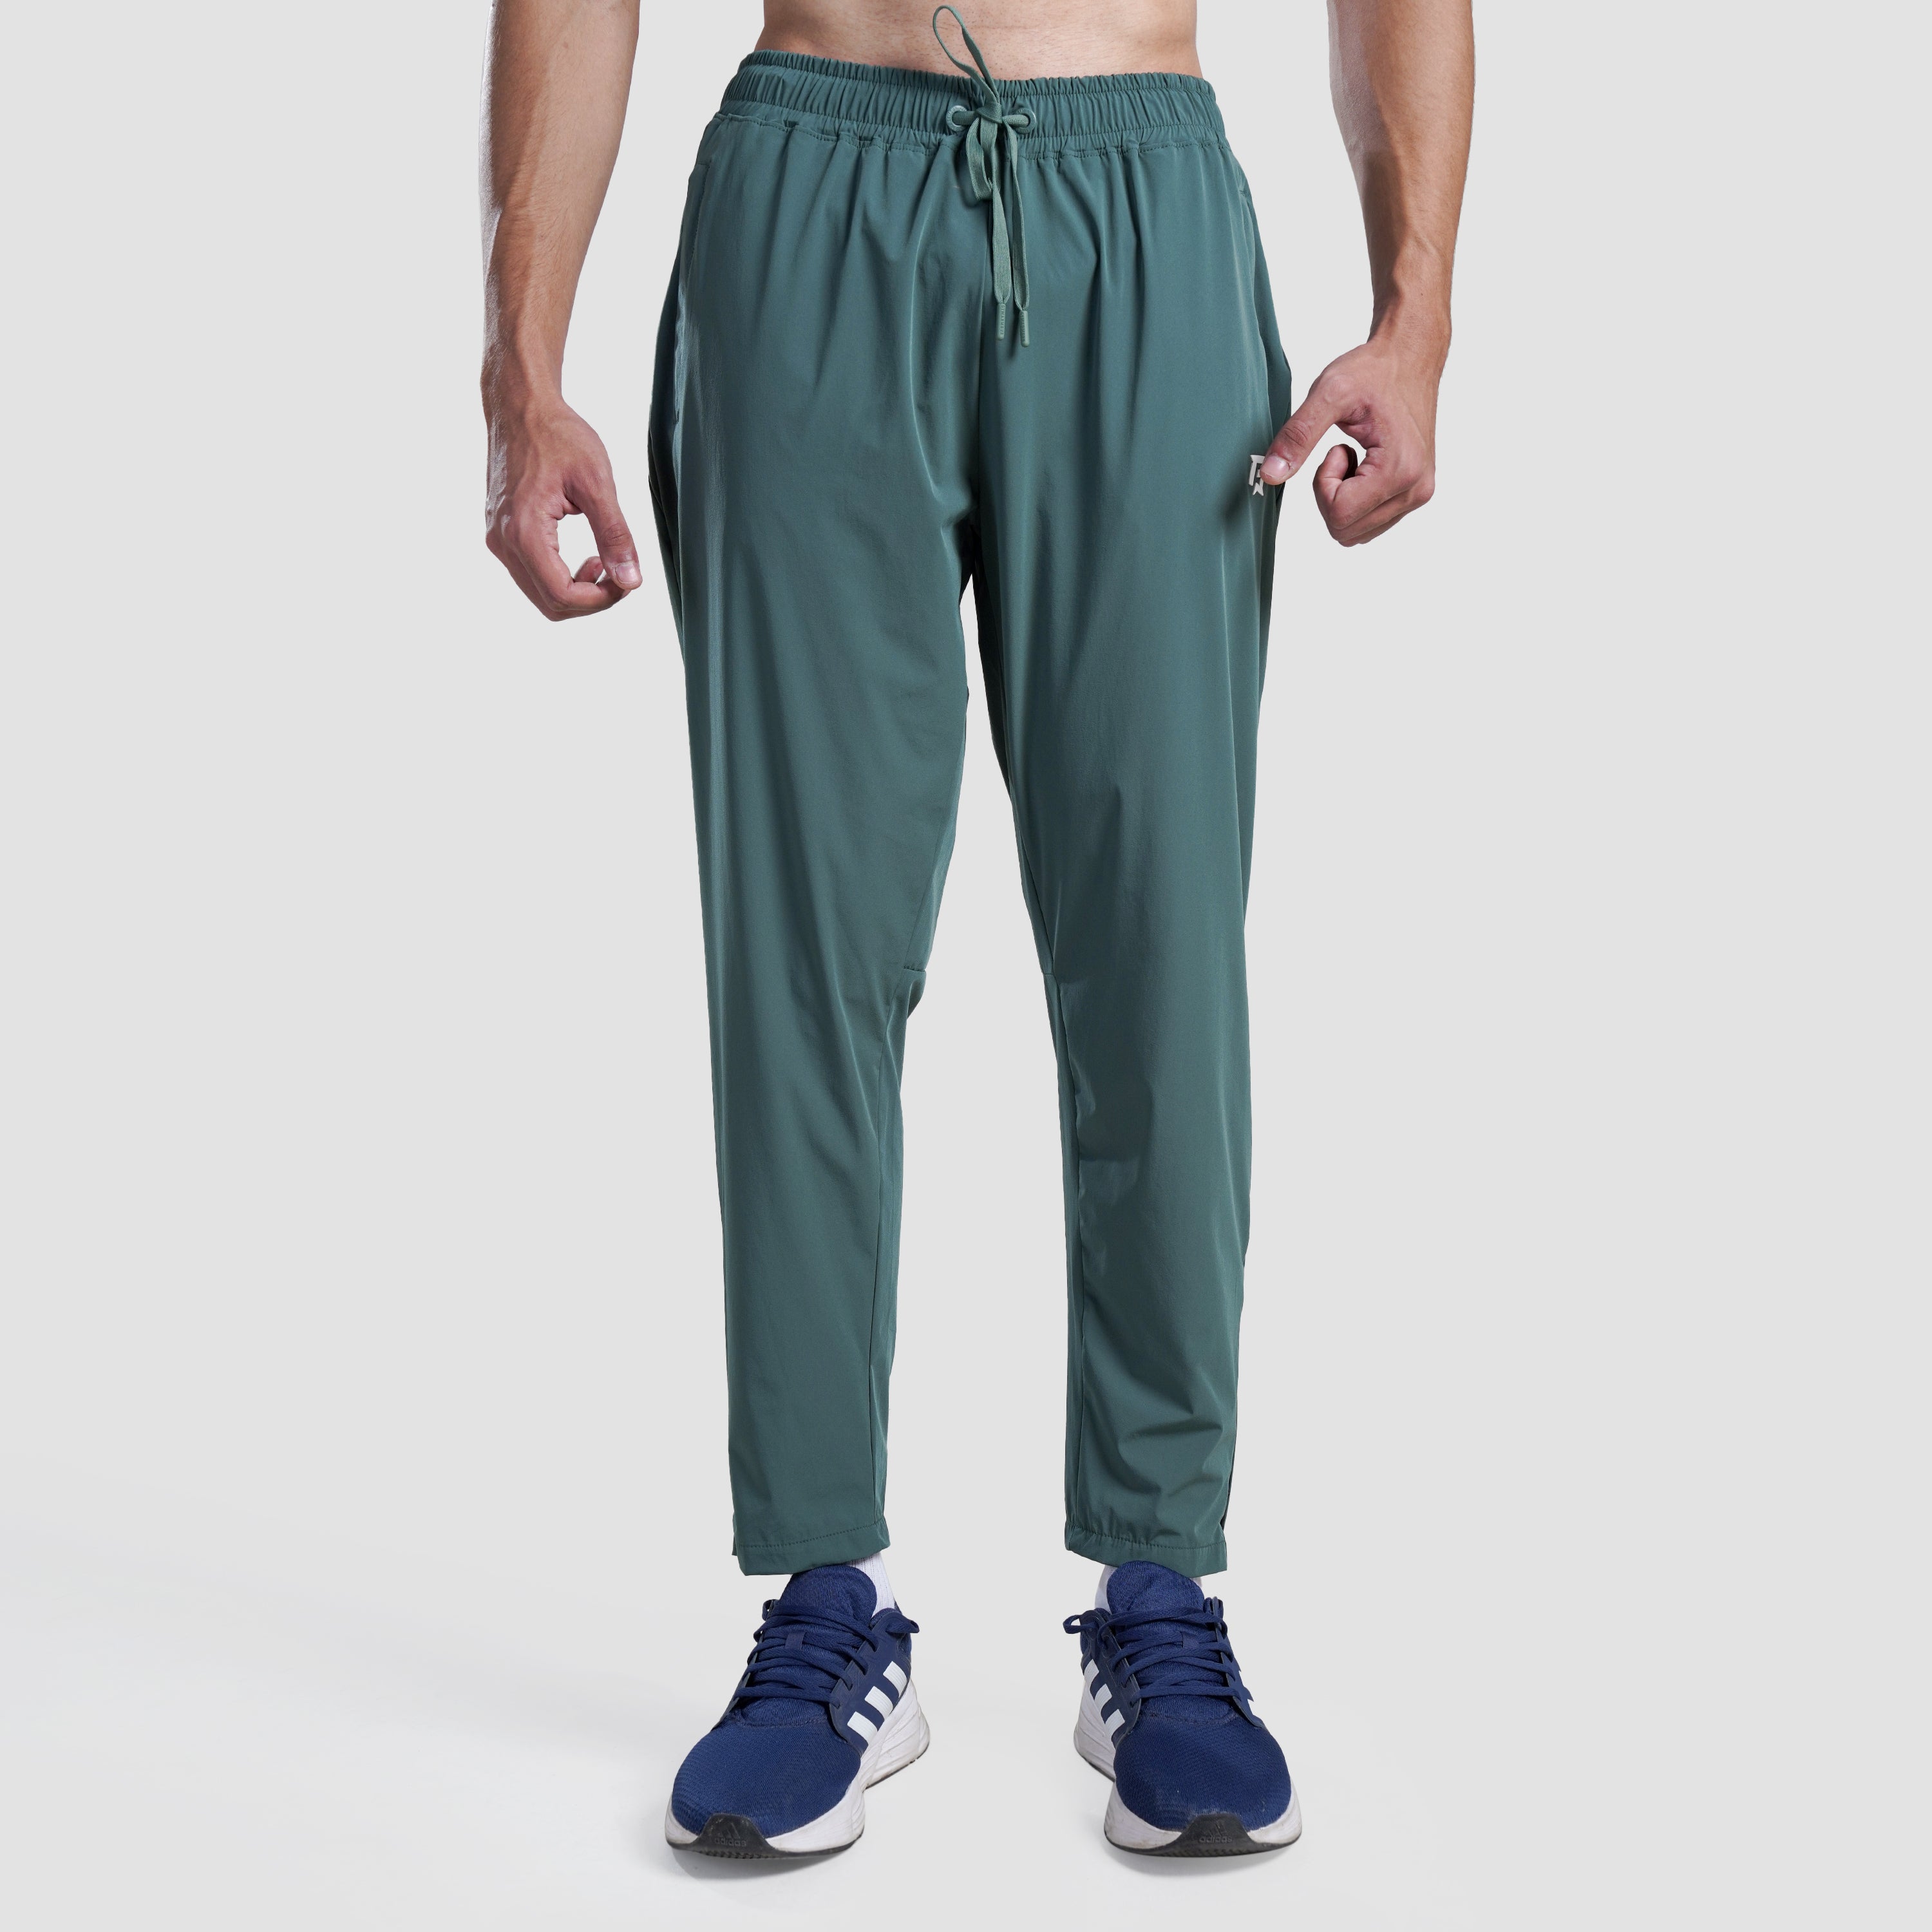 Aero Run Trousers (Green)